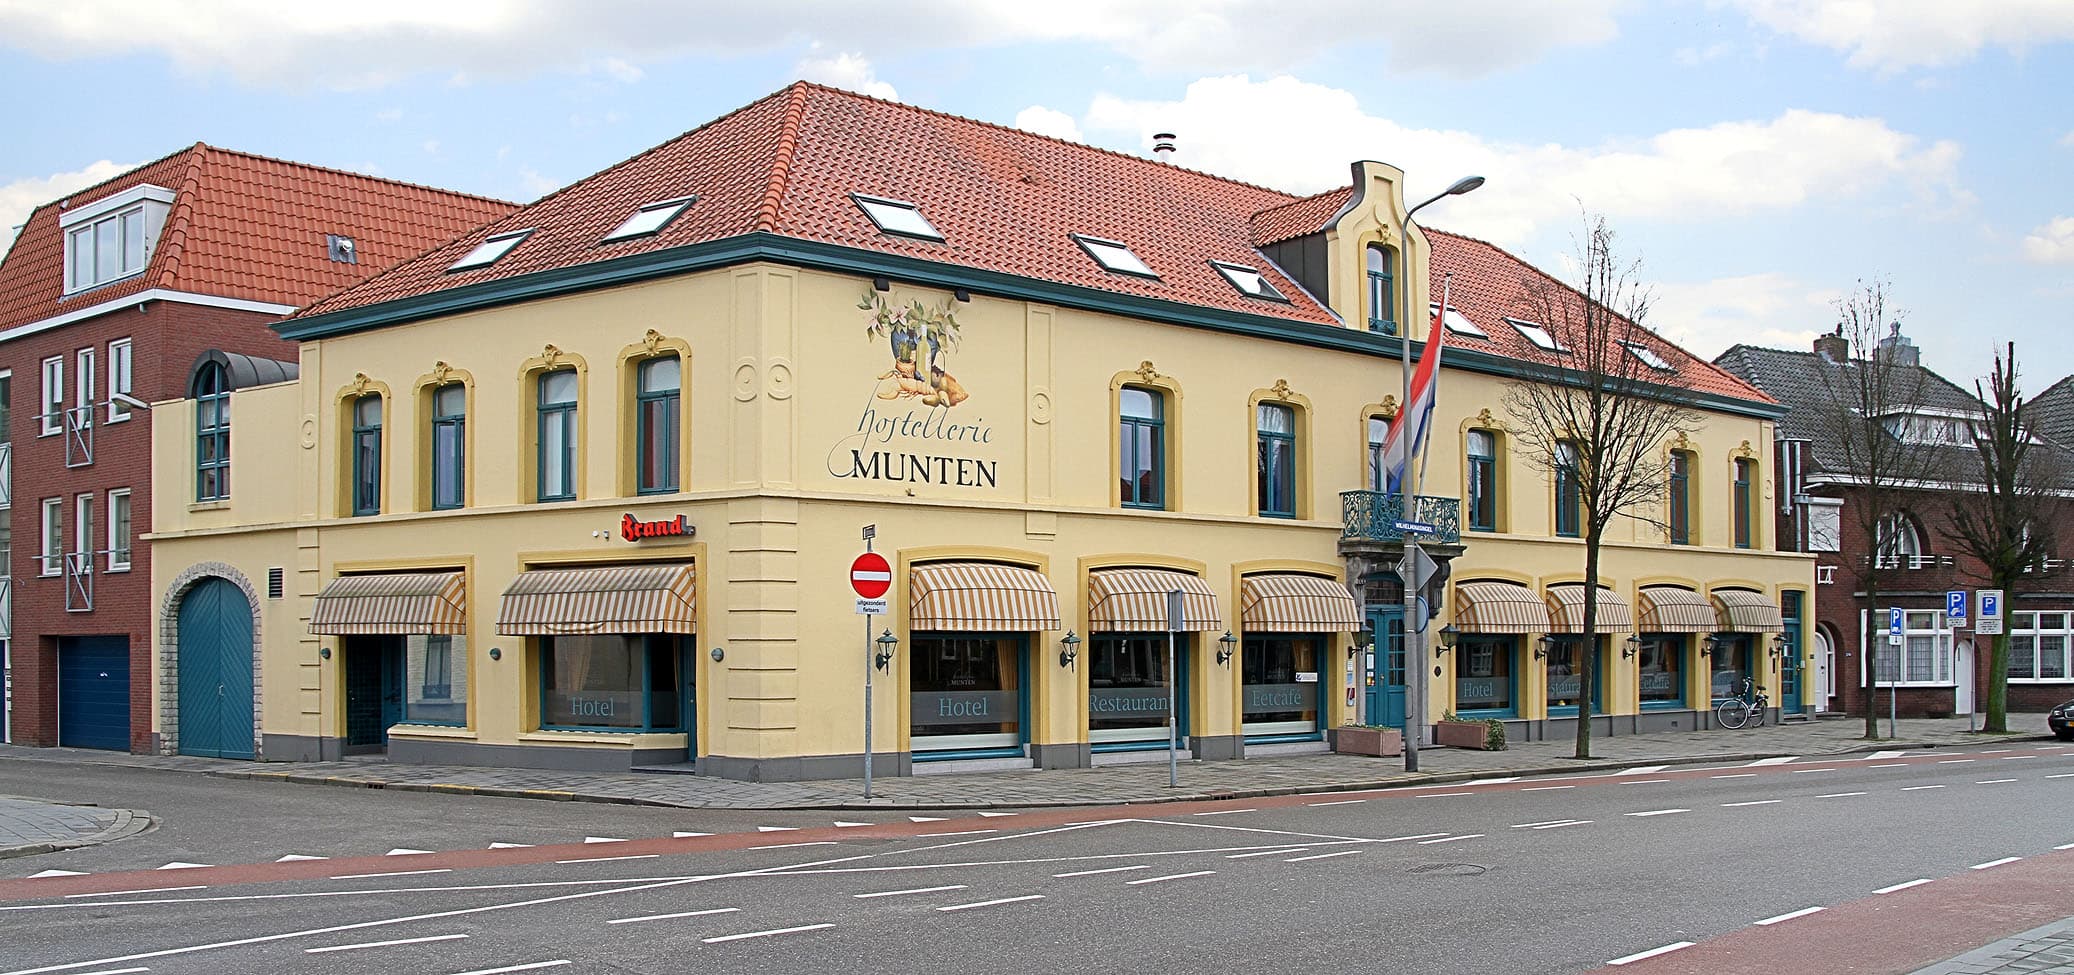 Hotel Munten